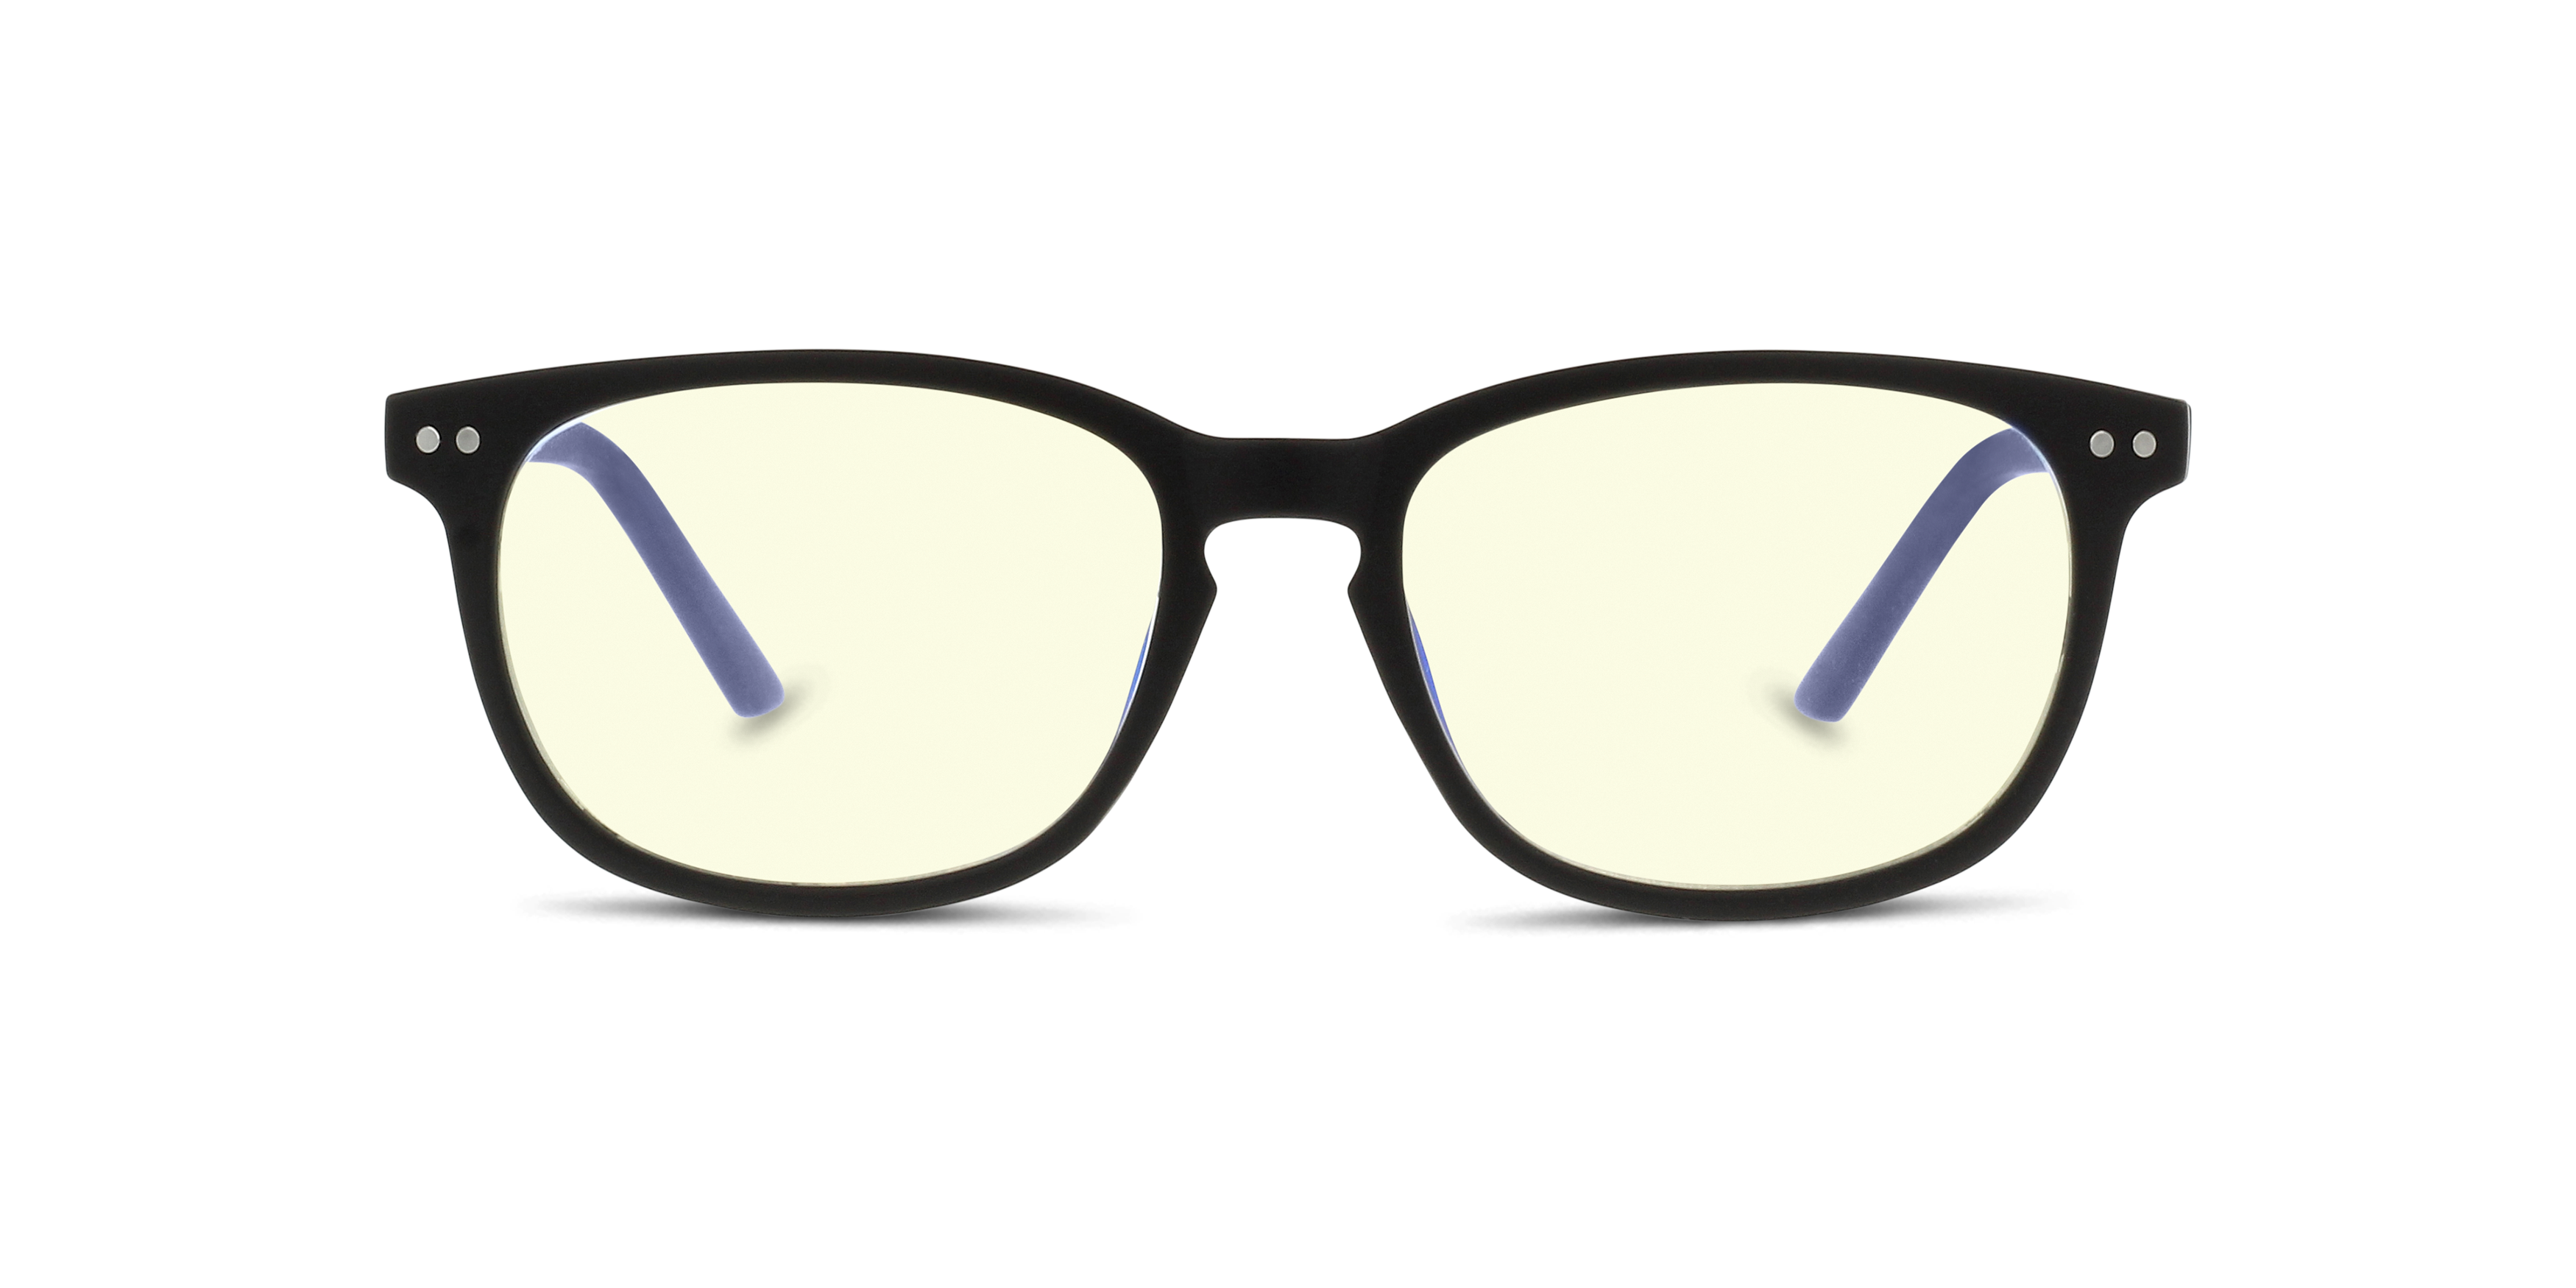 Conduite de nuit : Des lunettes sur mesure pour conduire